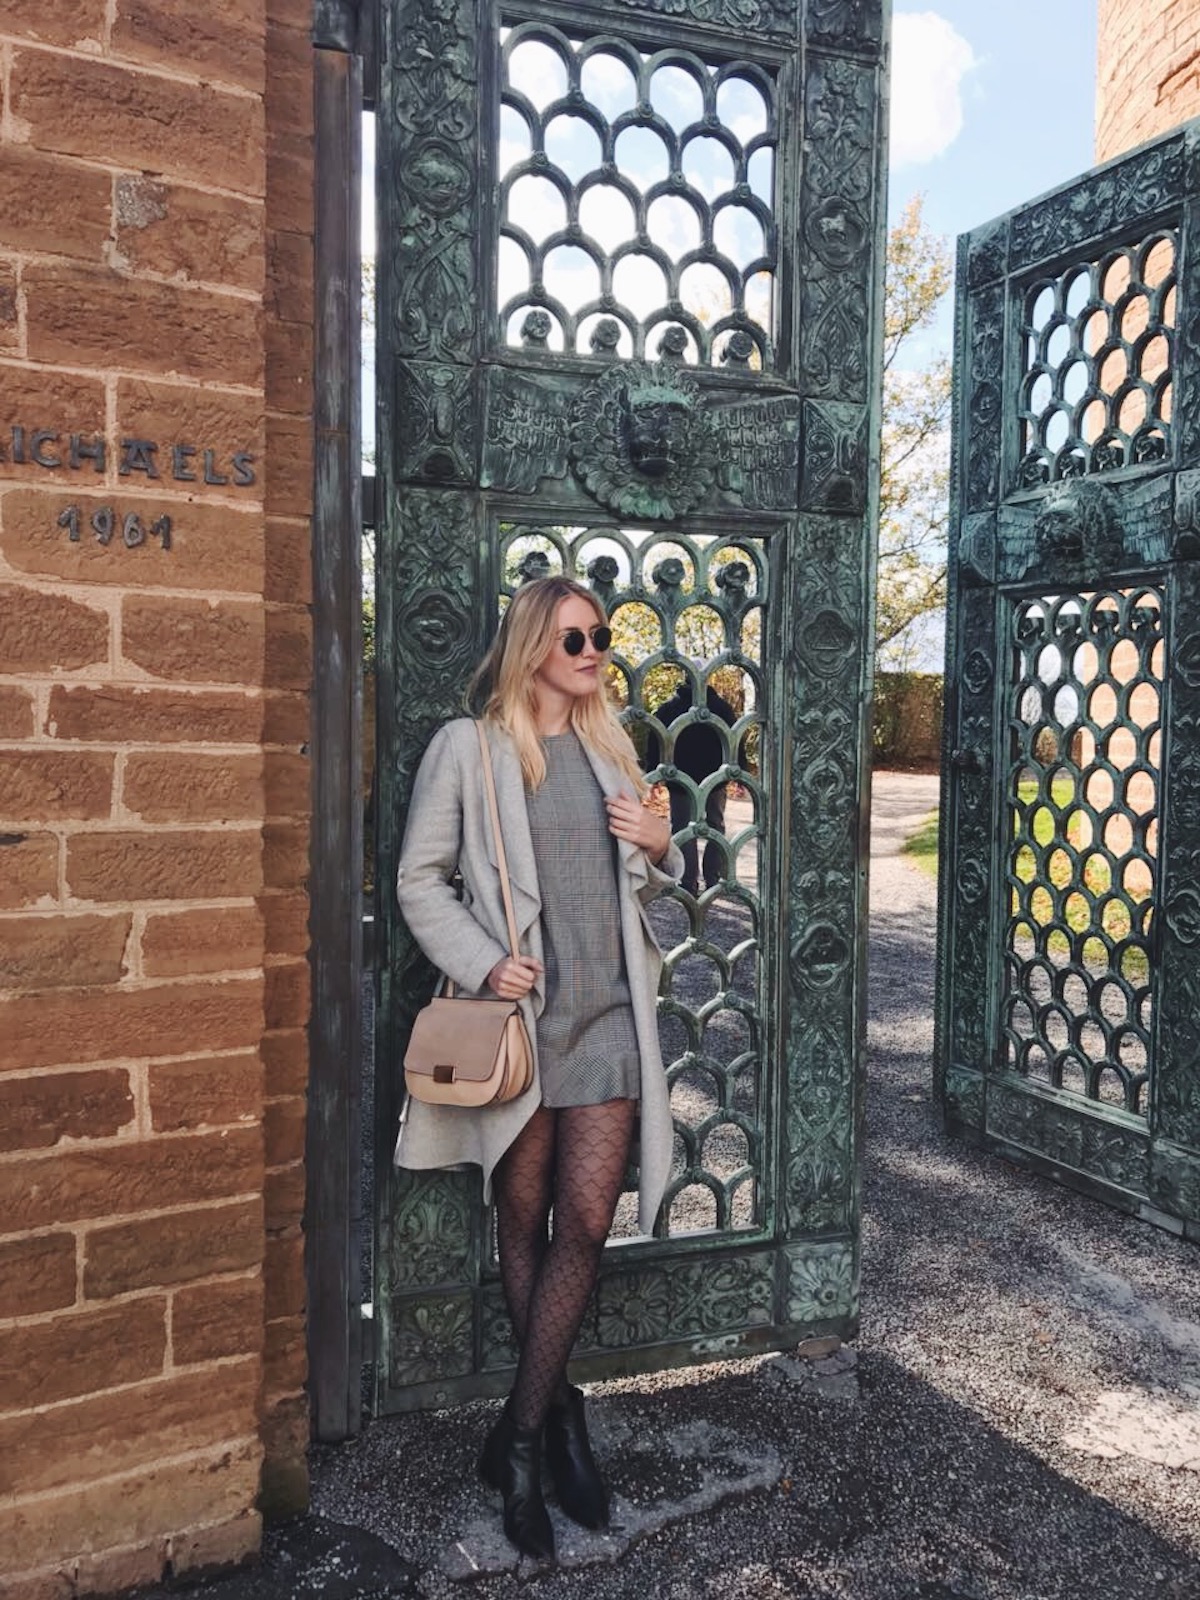 Fashion Stuttgart Blog Outfit Gambettes Box Erfahrungen Zara Kariertes Kleid Lace Strumpfhosen Tights